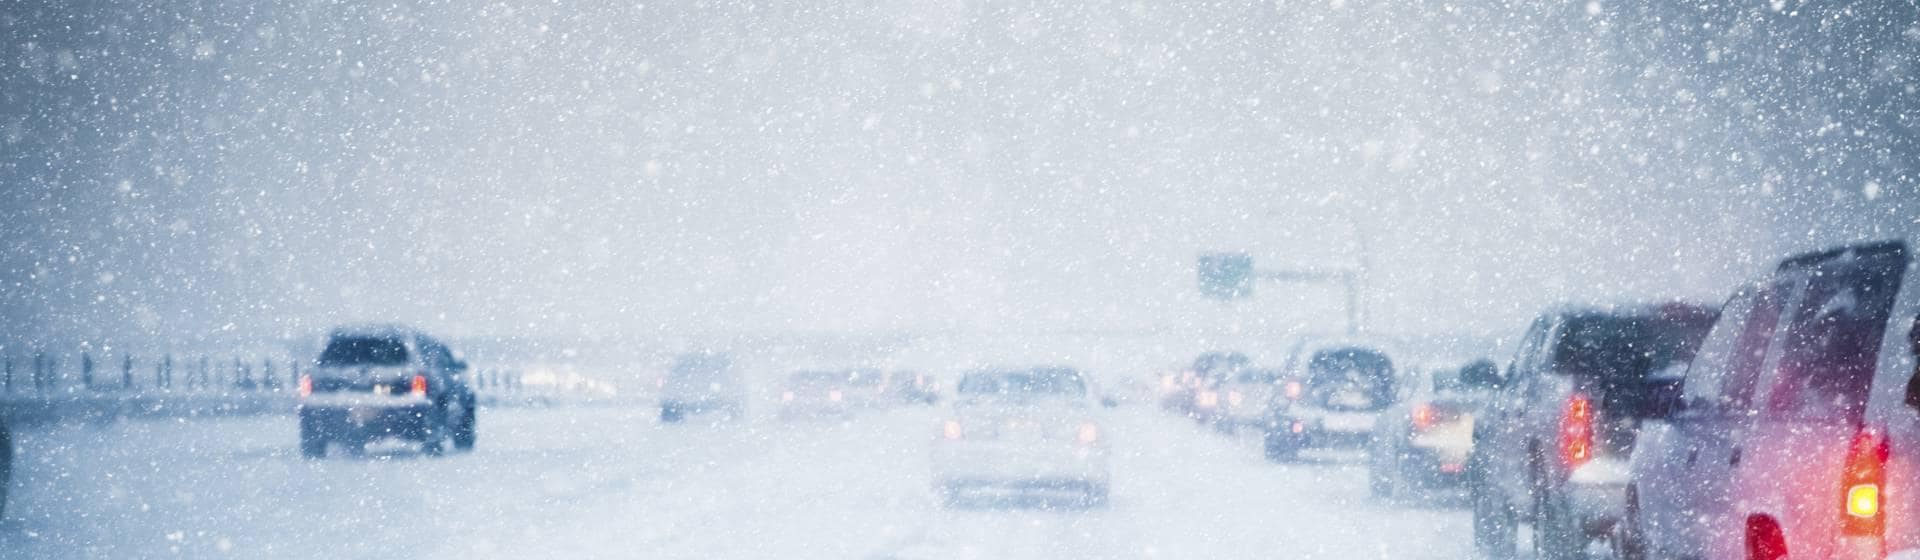 voitures sous la neige lors d'un sinistre événements climatiques